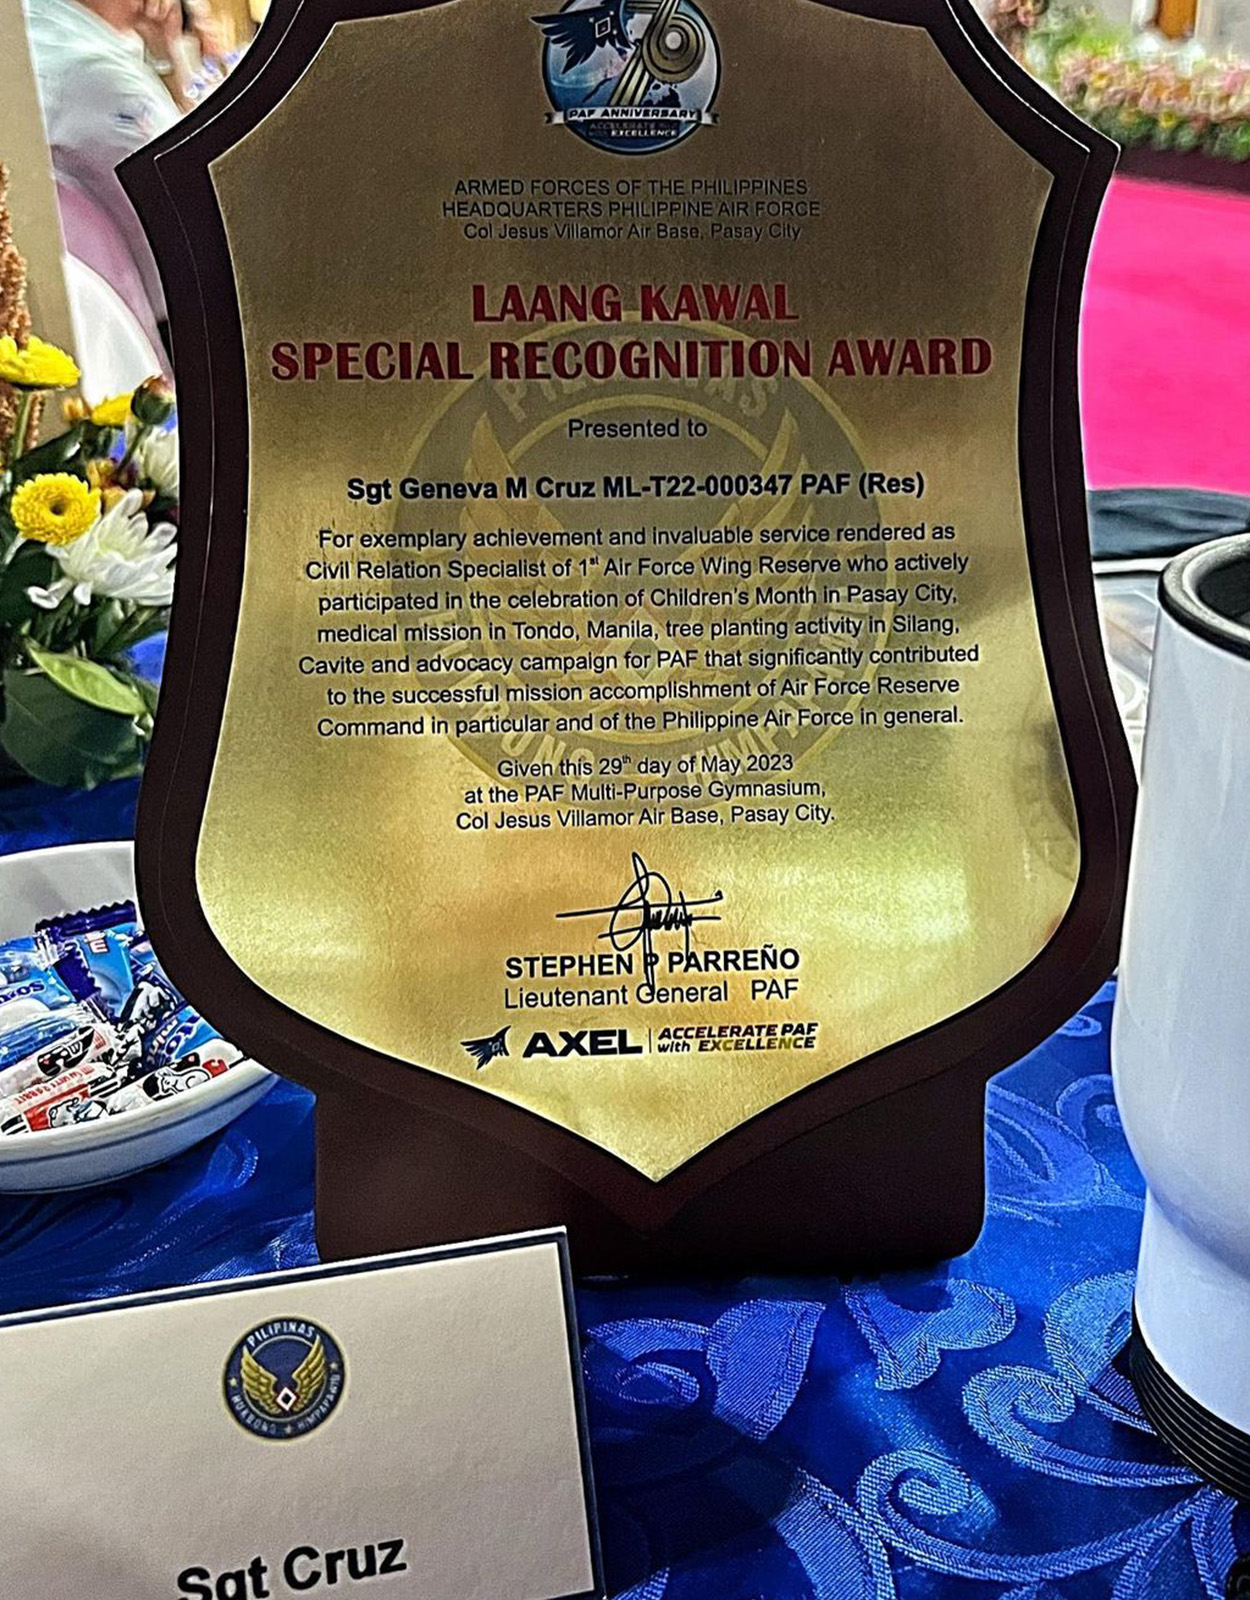 Geneva Cruz Laang Kawal Special Recognition Award